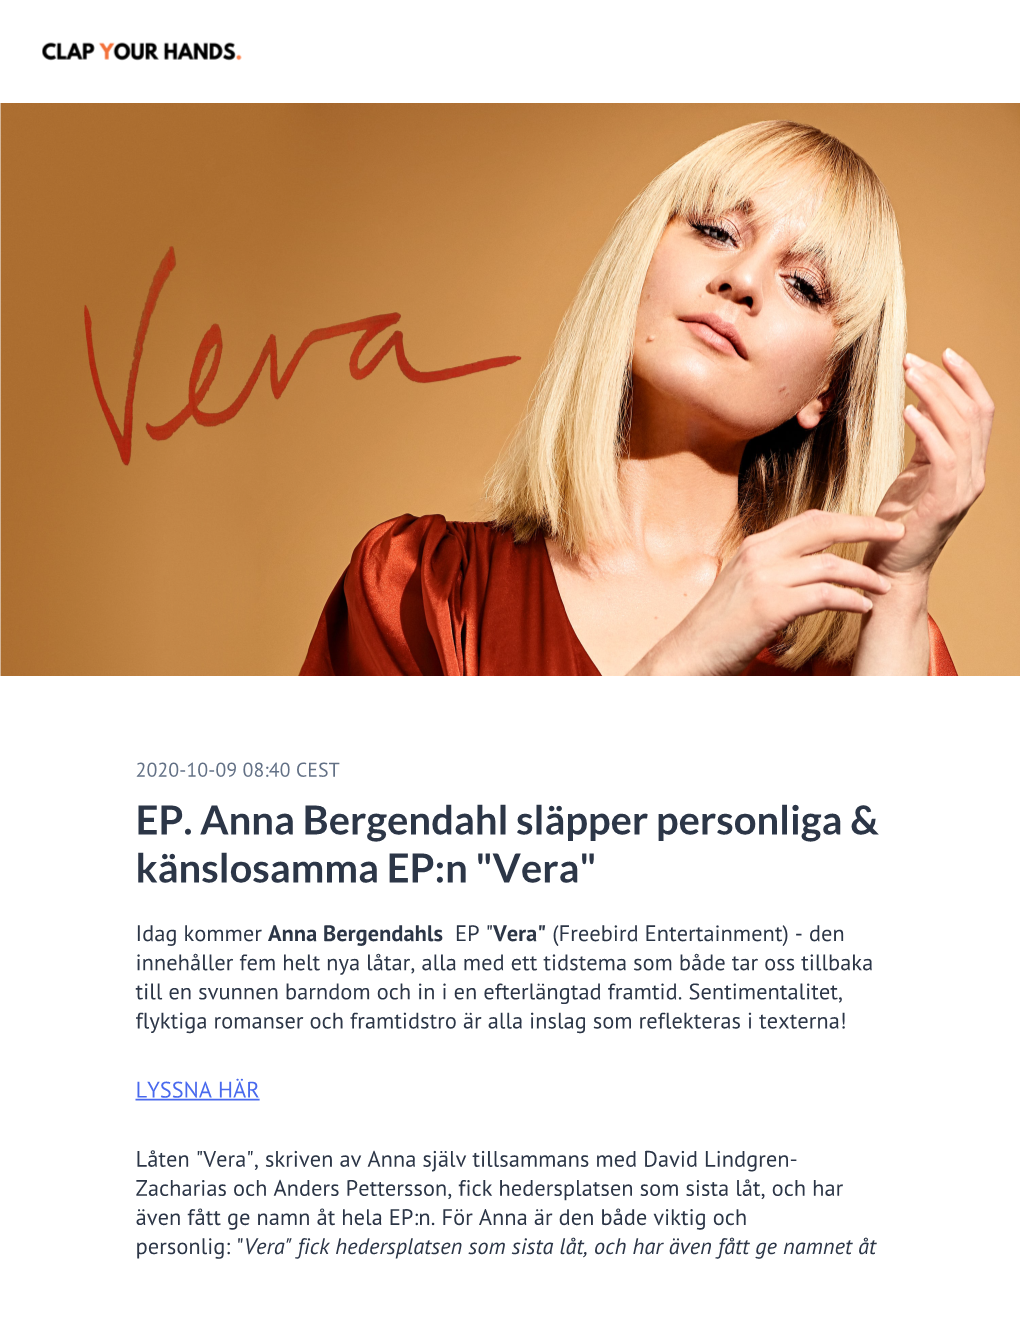 EP. Anna Bergendahl Släpper Personliga & Känslosamma EP:N "Vera"